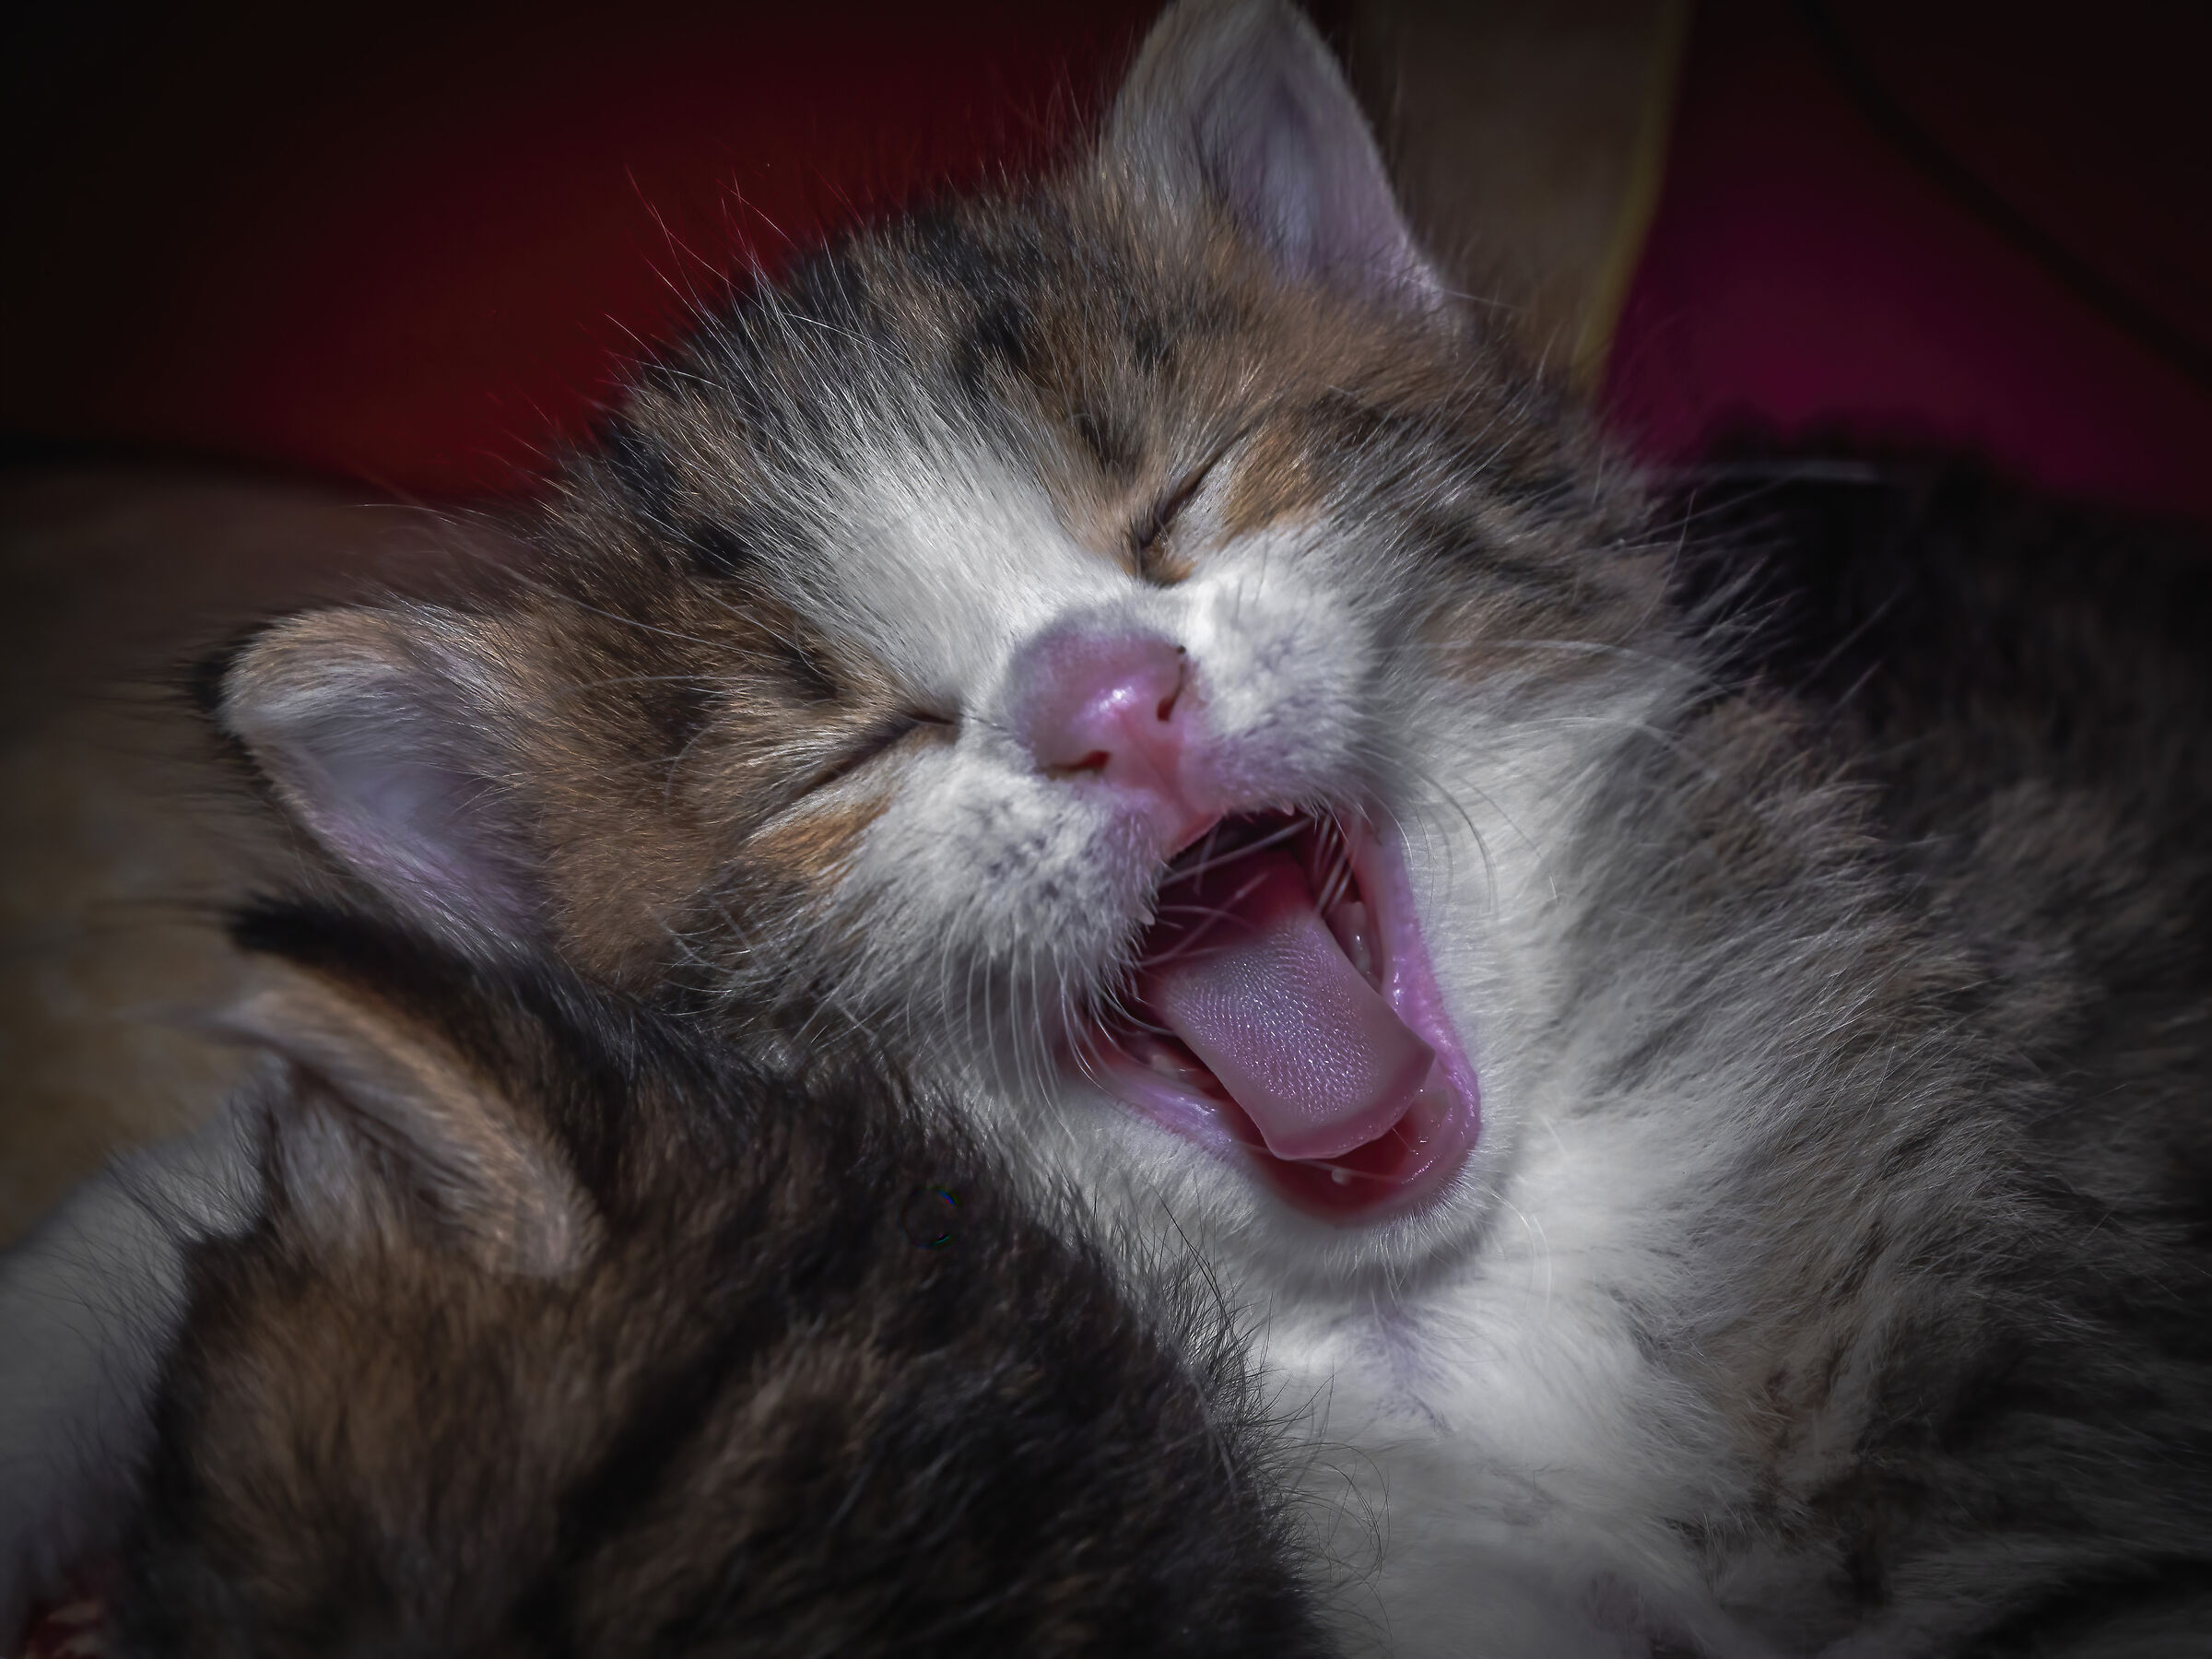 yawn...